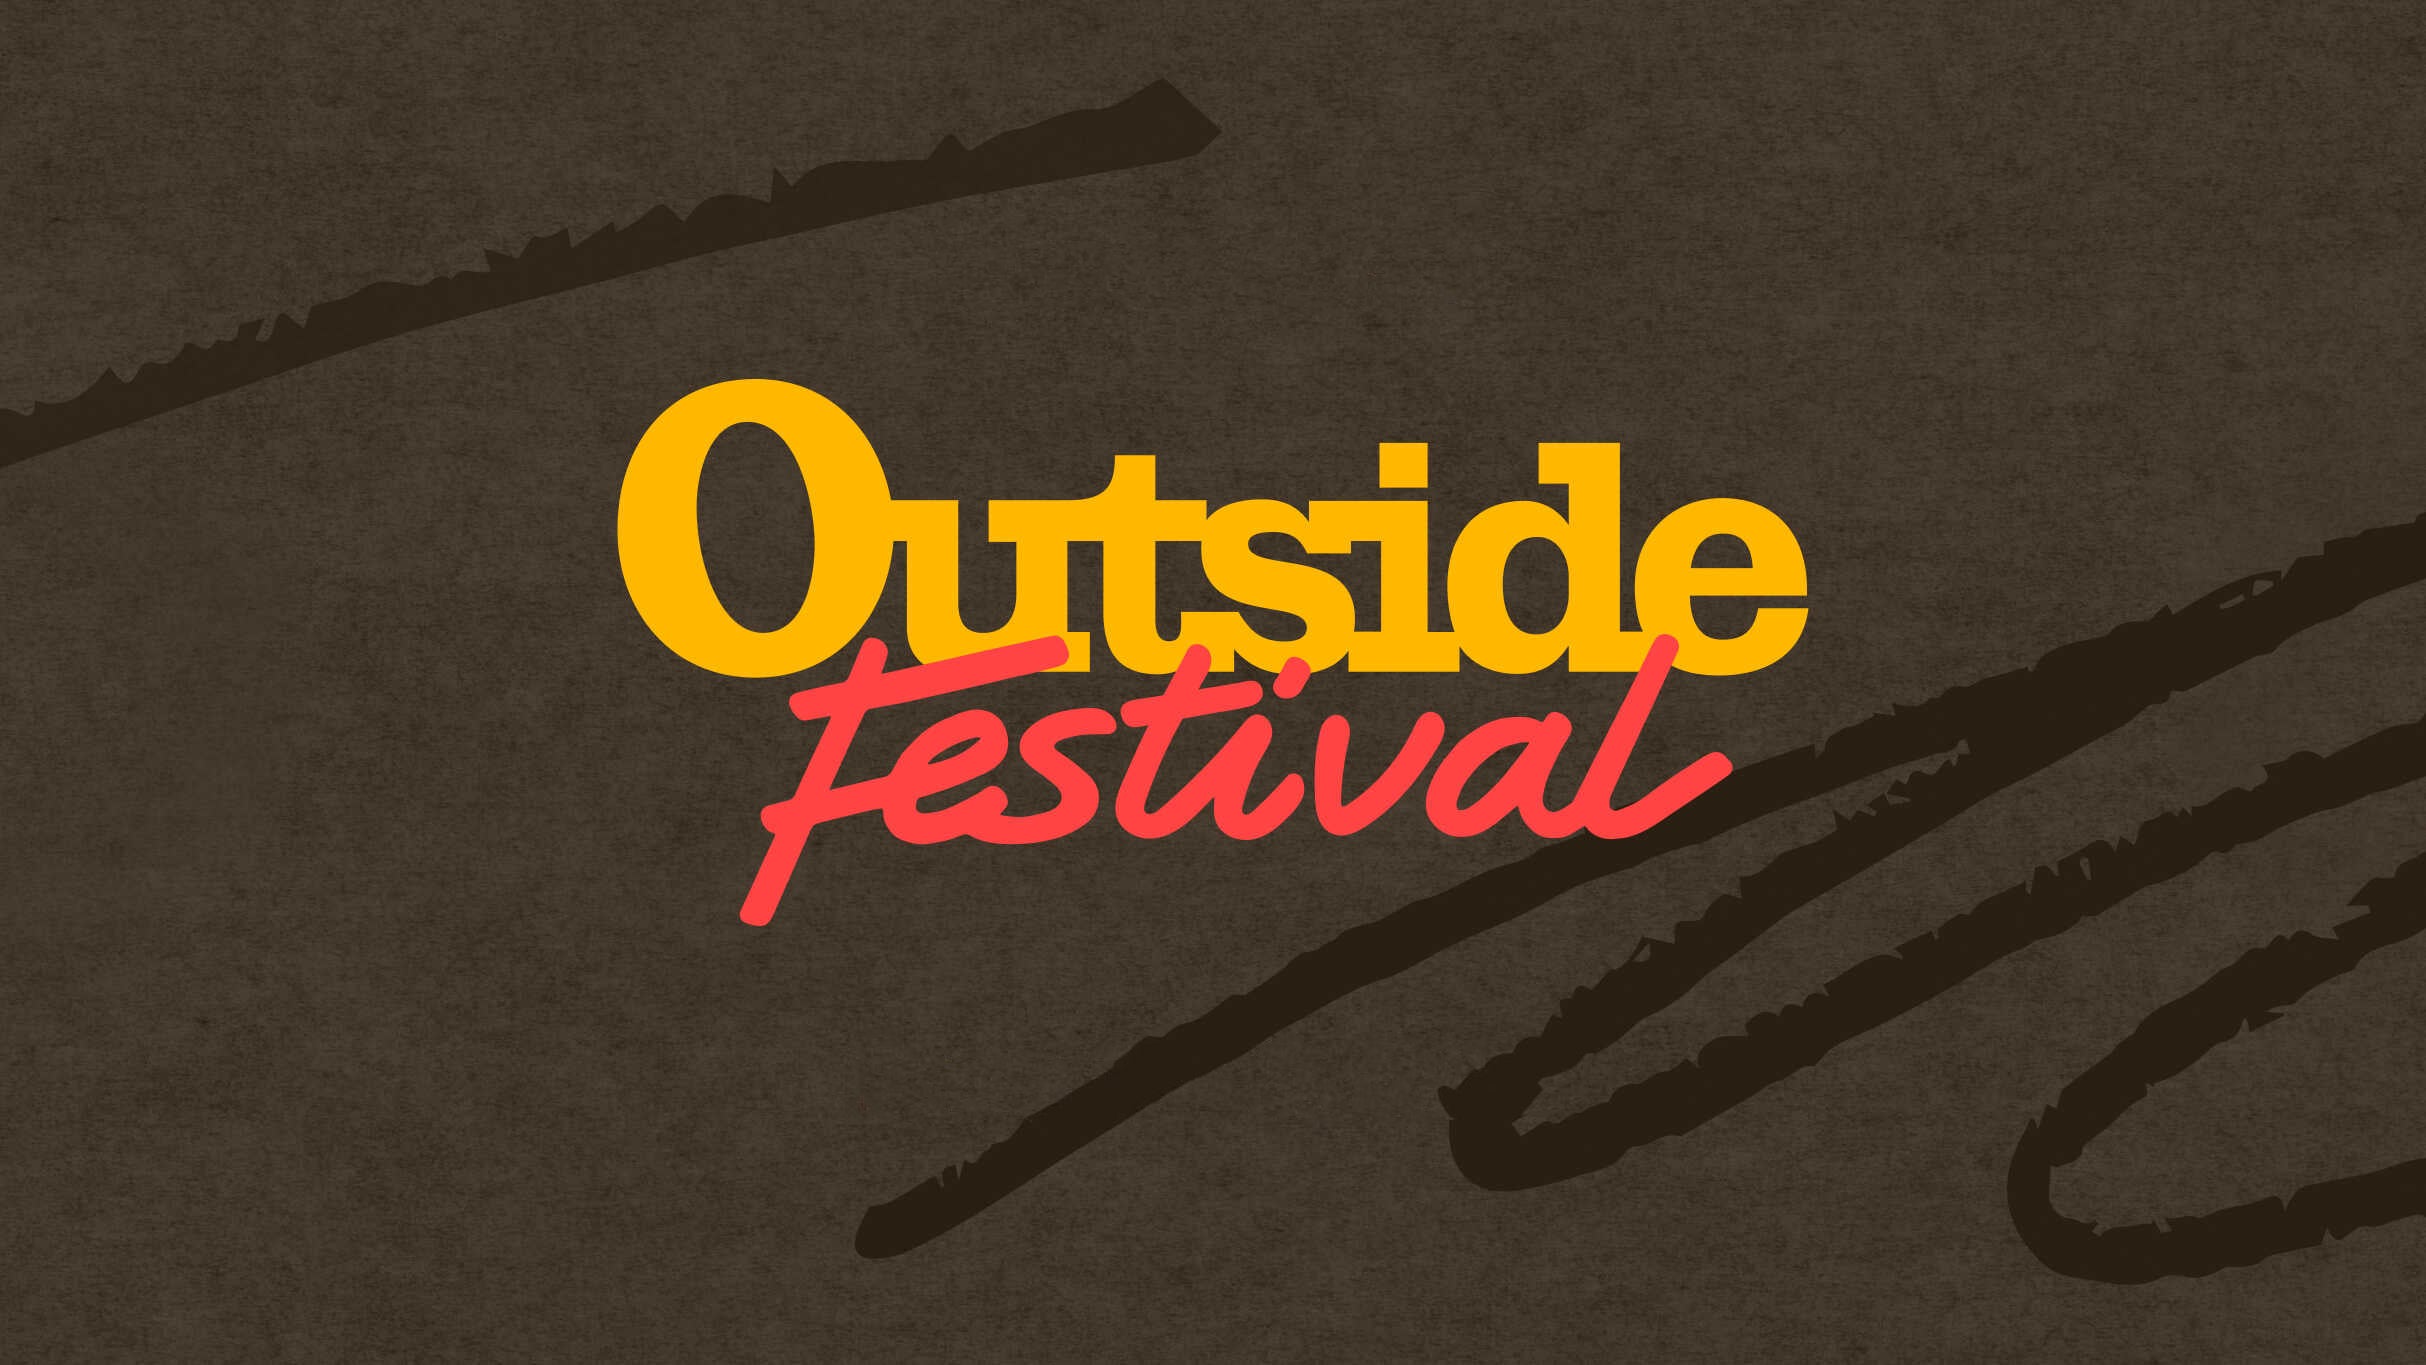 Outside Festival presale information on freepresalepasswords.com